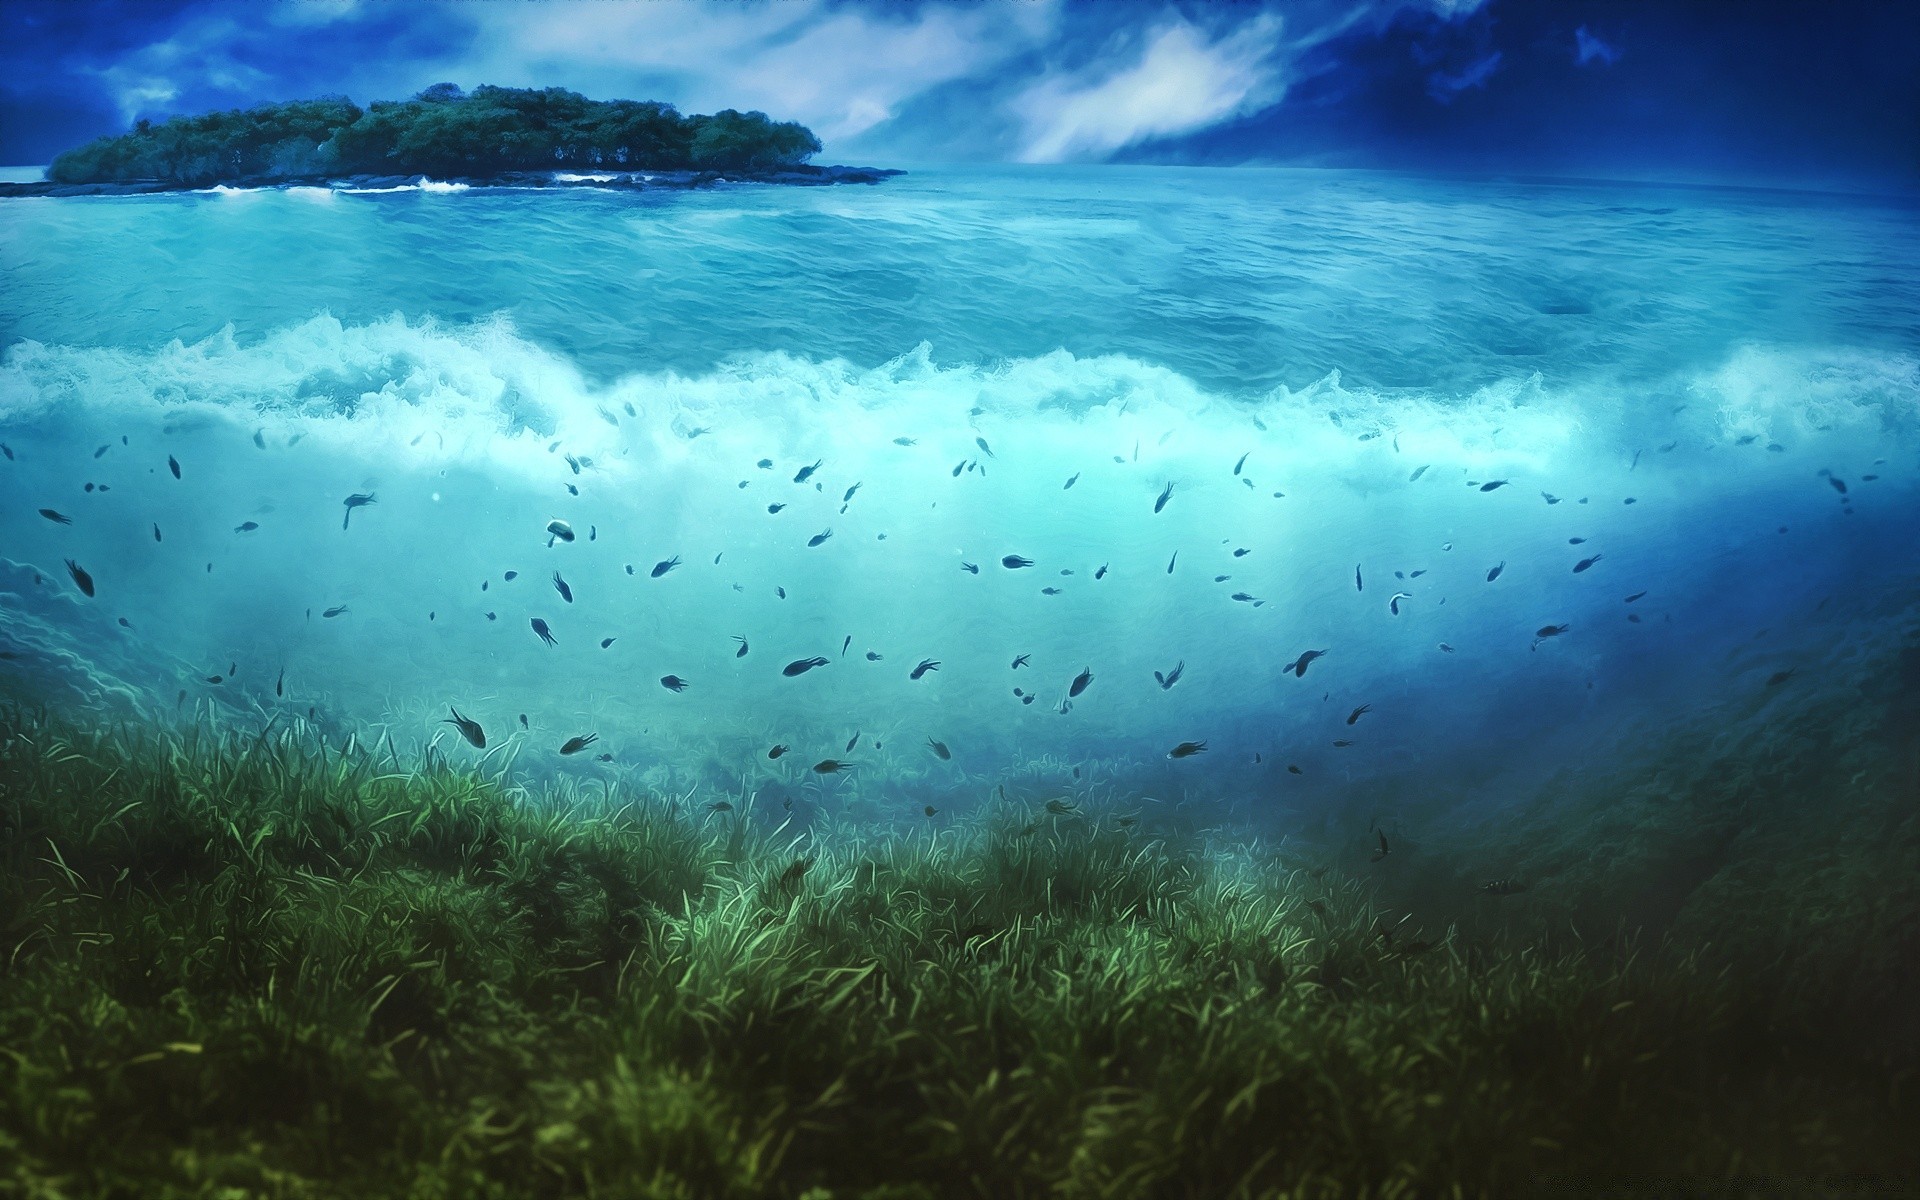 креатив подводный воды море океан природа хорошую погоду пейзаж пейзаж риф солнце рабочего стола коралловый лето живописный путешествия тропический понятно свет цвет